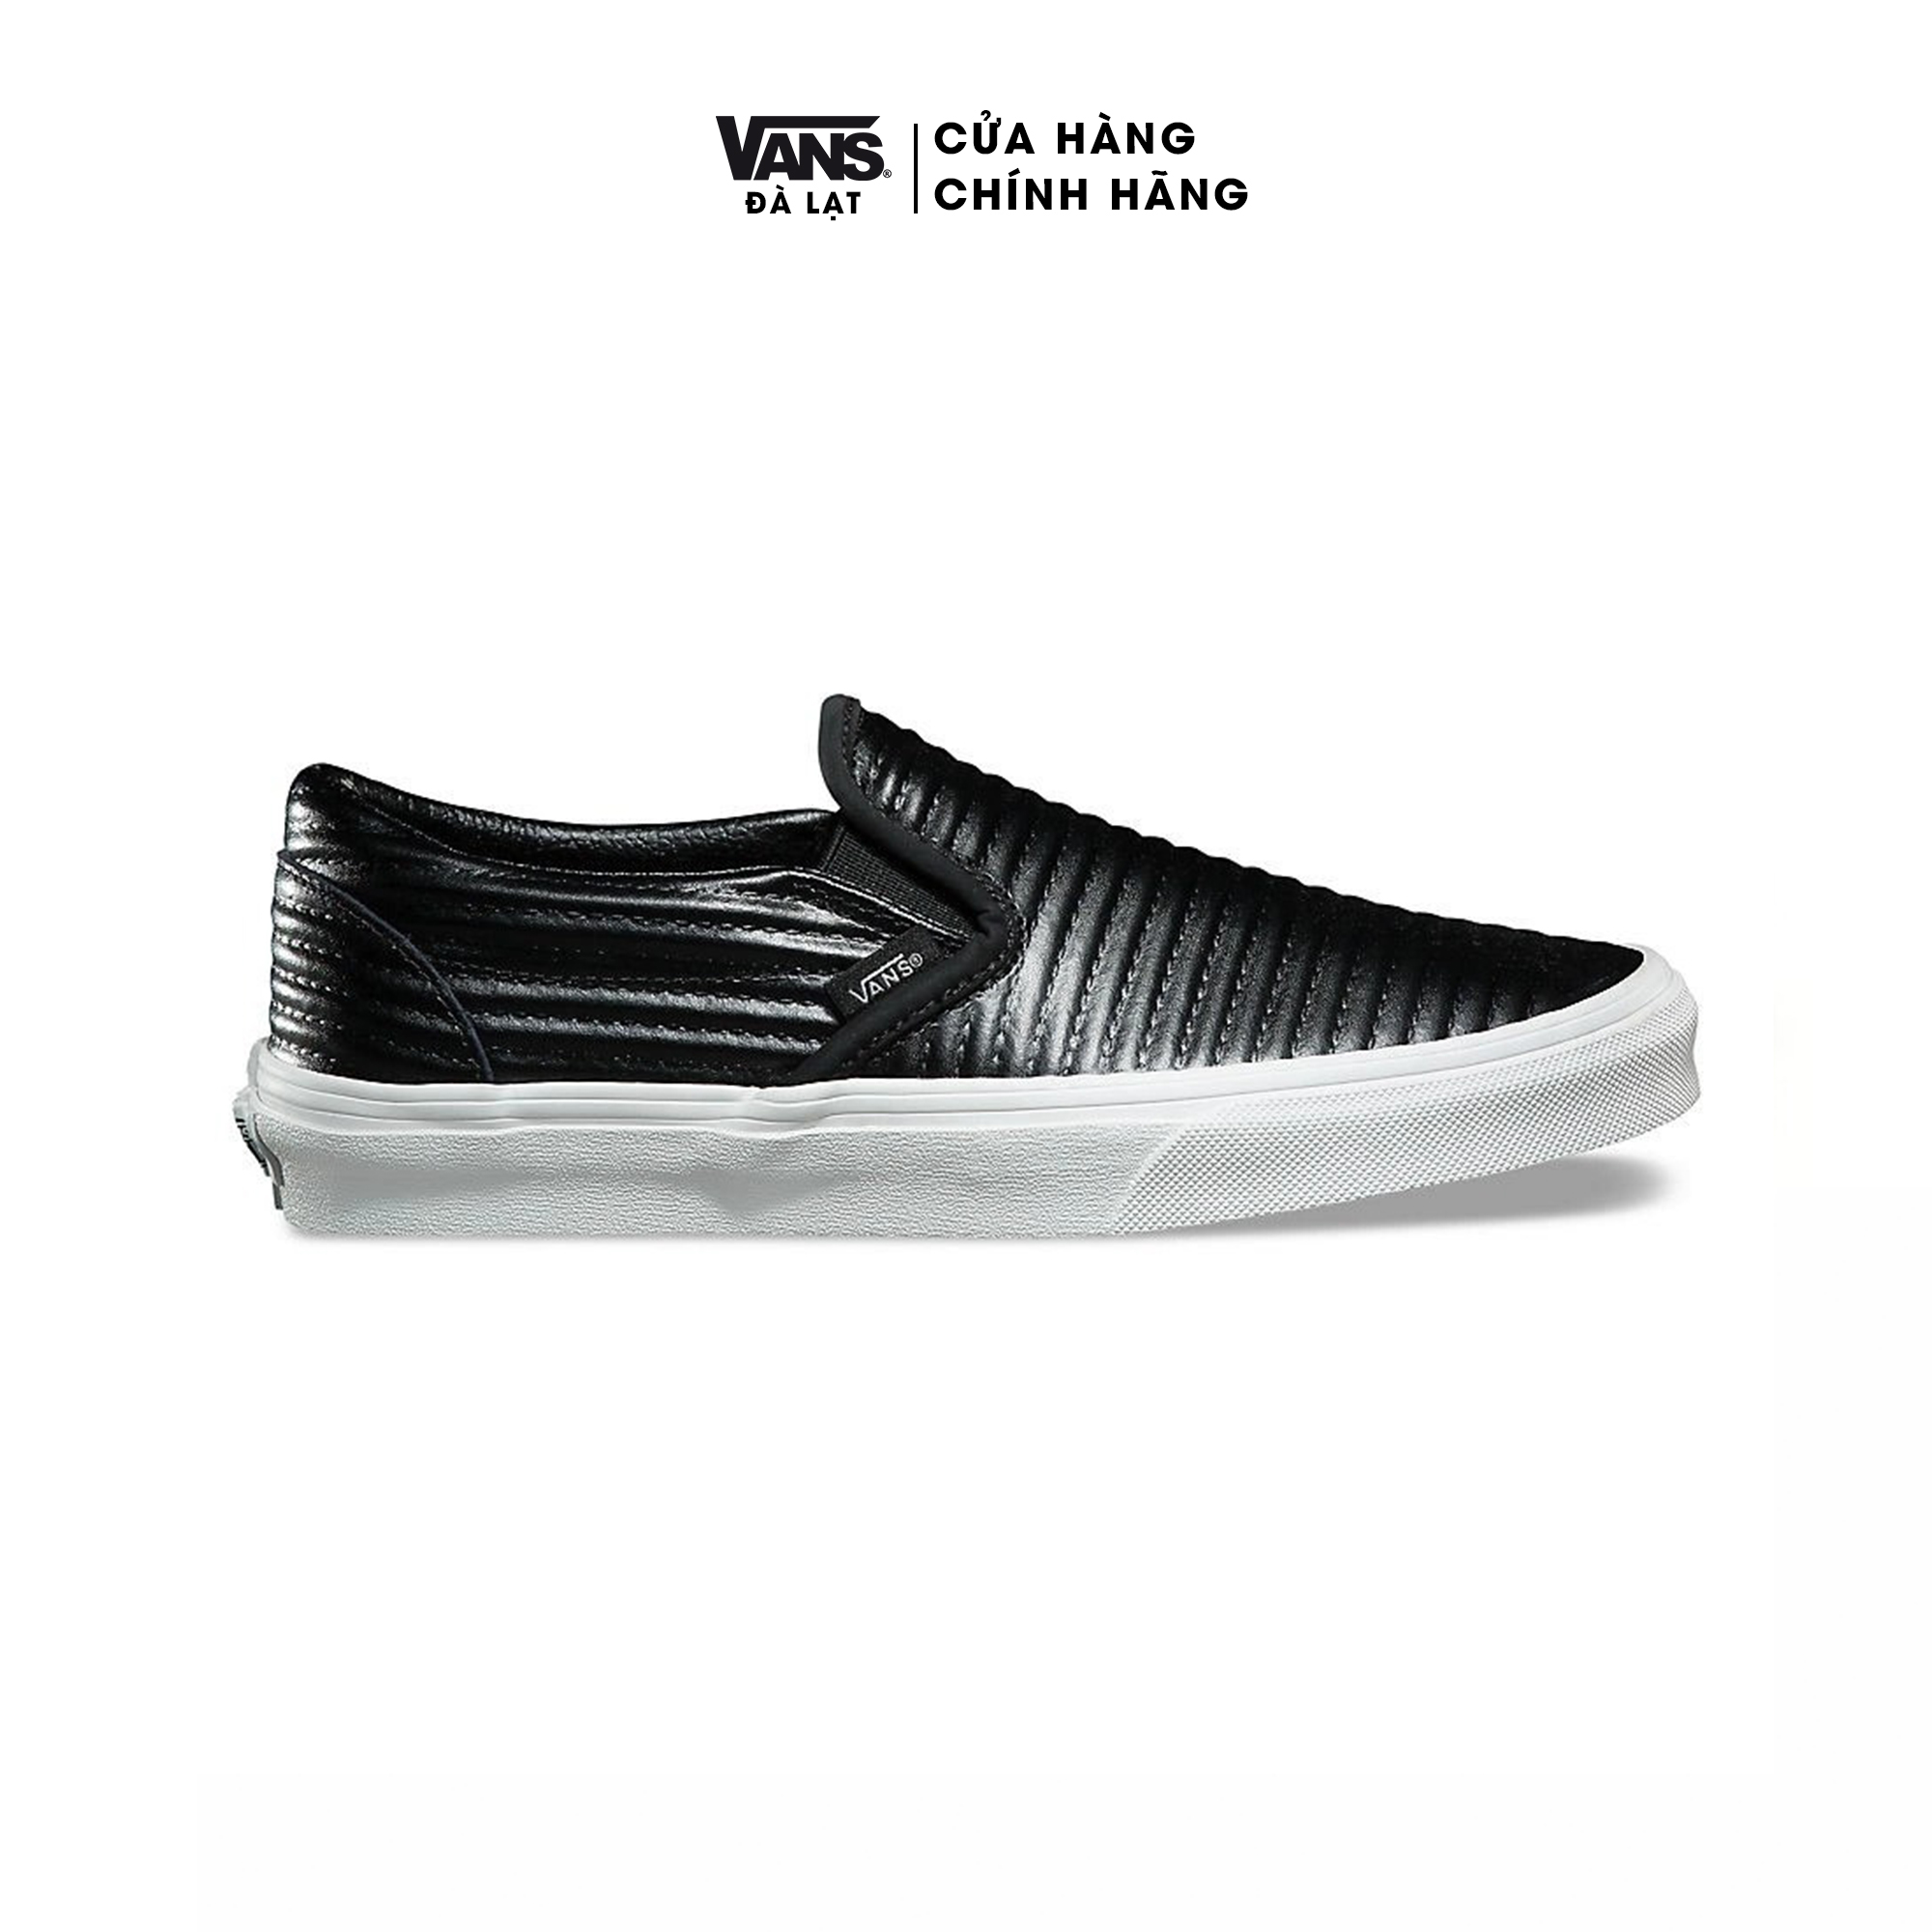 Giày Vans Sneaker nữ - VANS MOTO LEATHER CLASSIC SLIP-ON BLACK VN0A38F7OGG Giày slip on